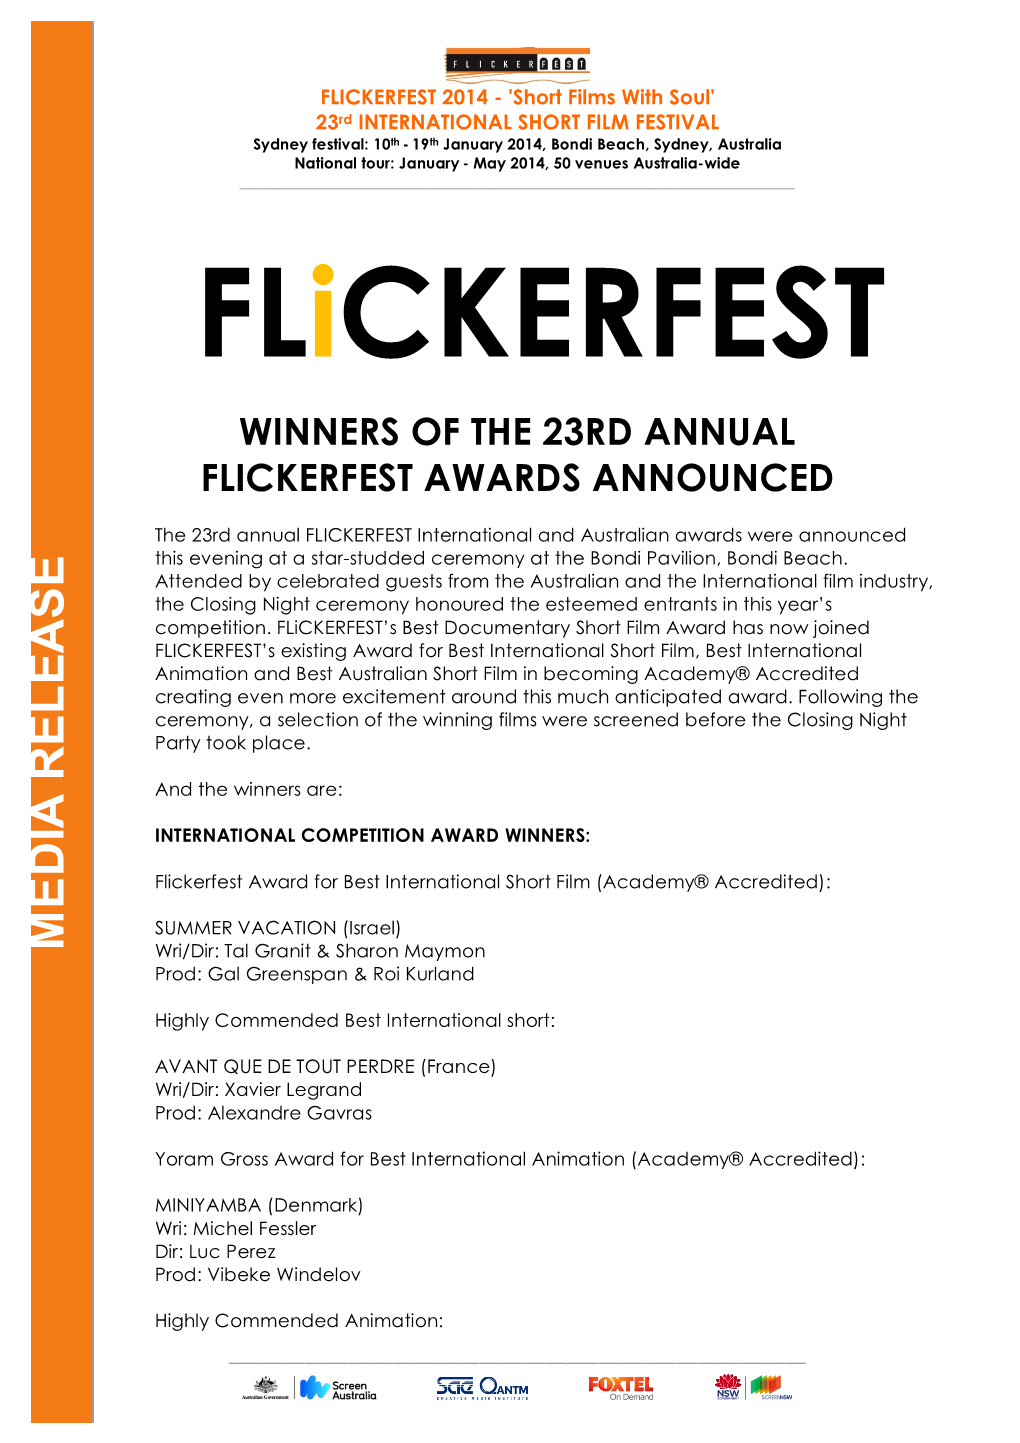 Flickerfest 2014 Awards Press Release